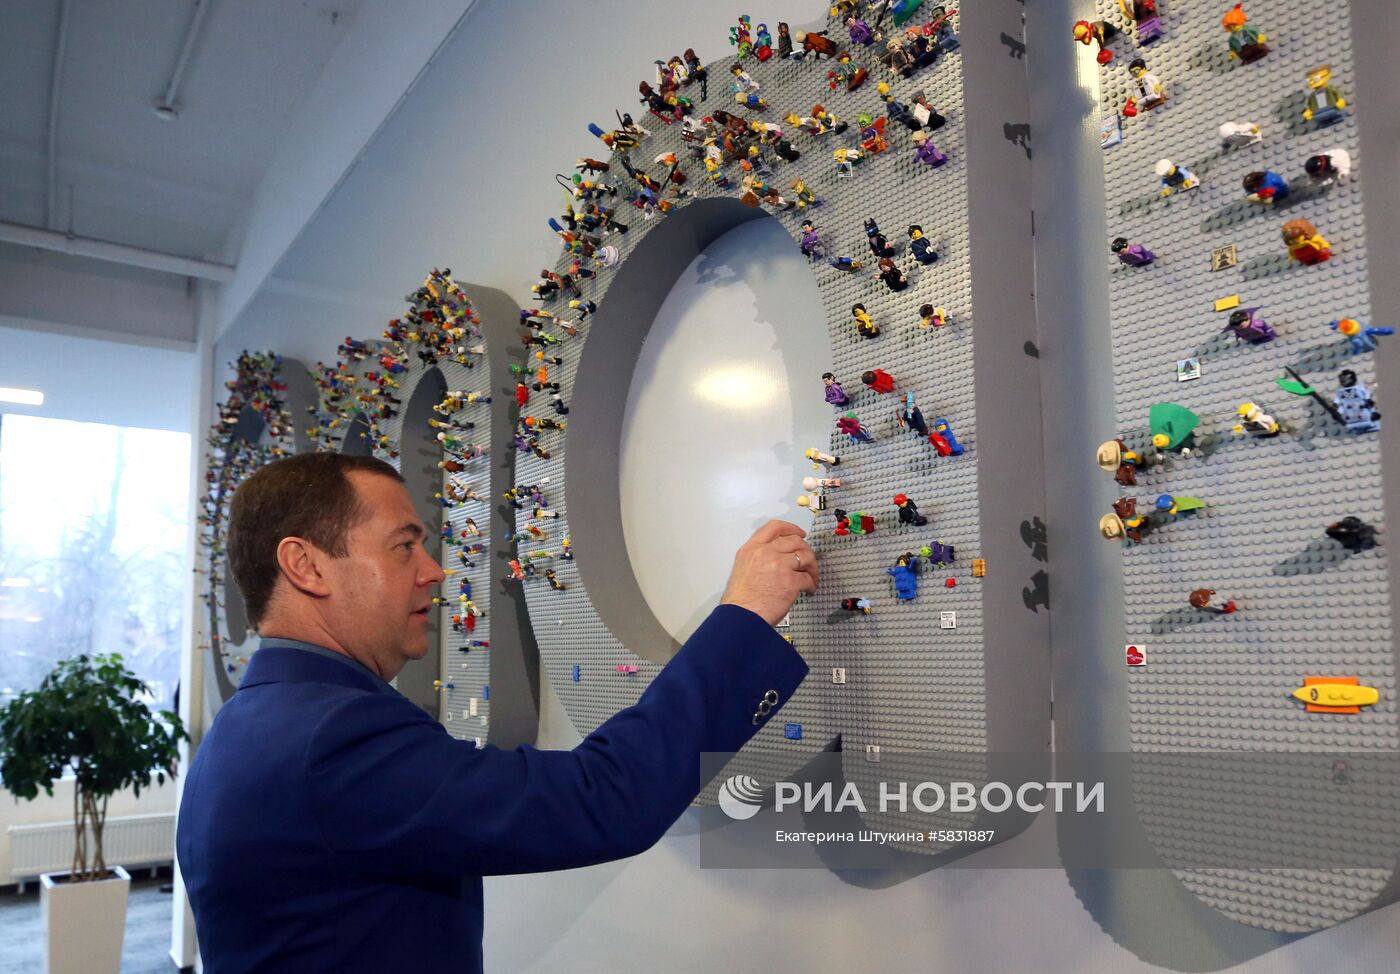 Премьер-министр РФ Д. Медведев посетил офис компании Mail.ru Group